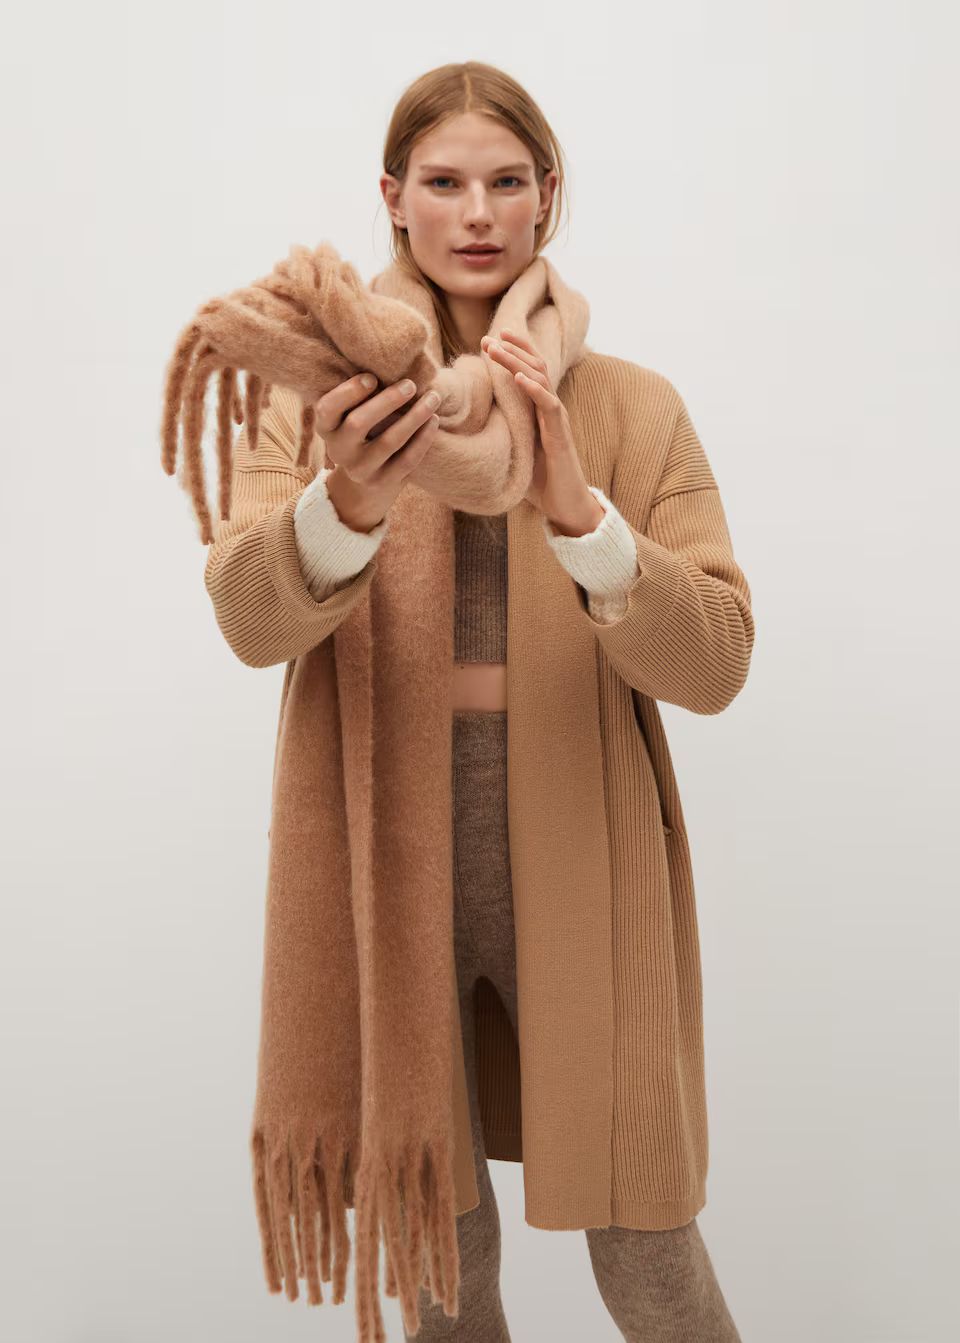 Knitted long coat | MANGO (US)